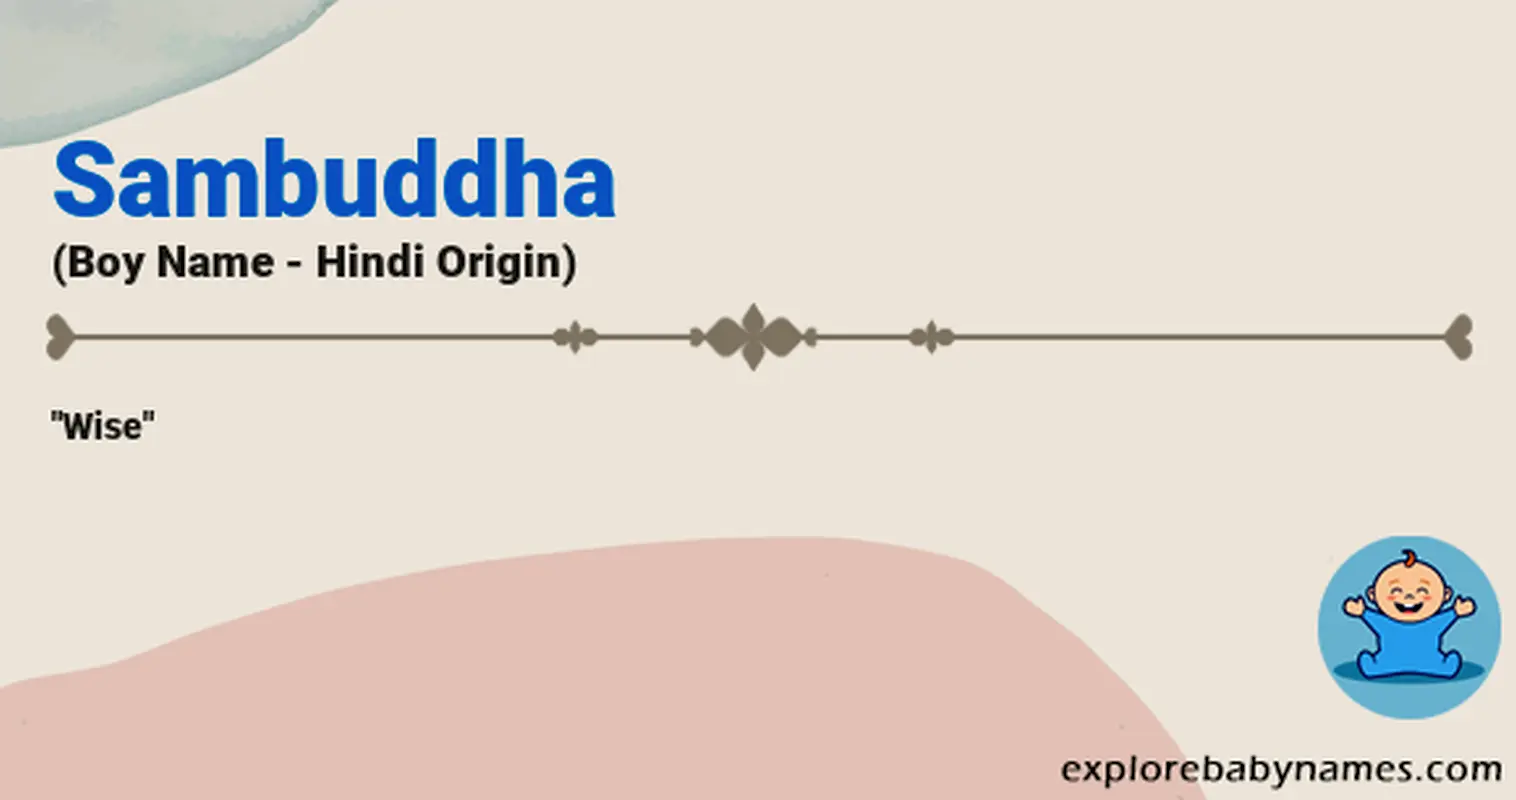 Meaning of Sambuddha